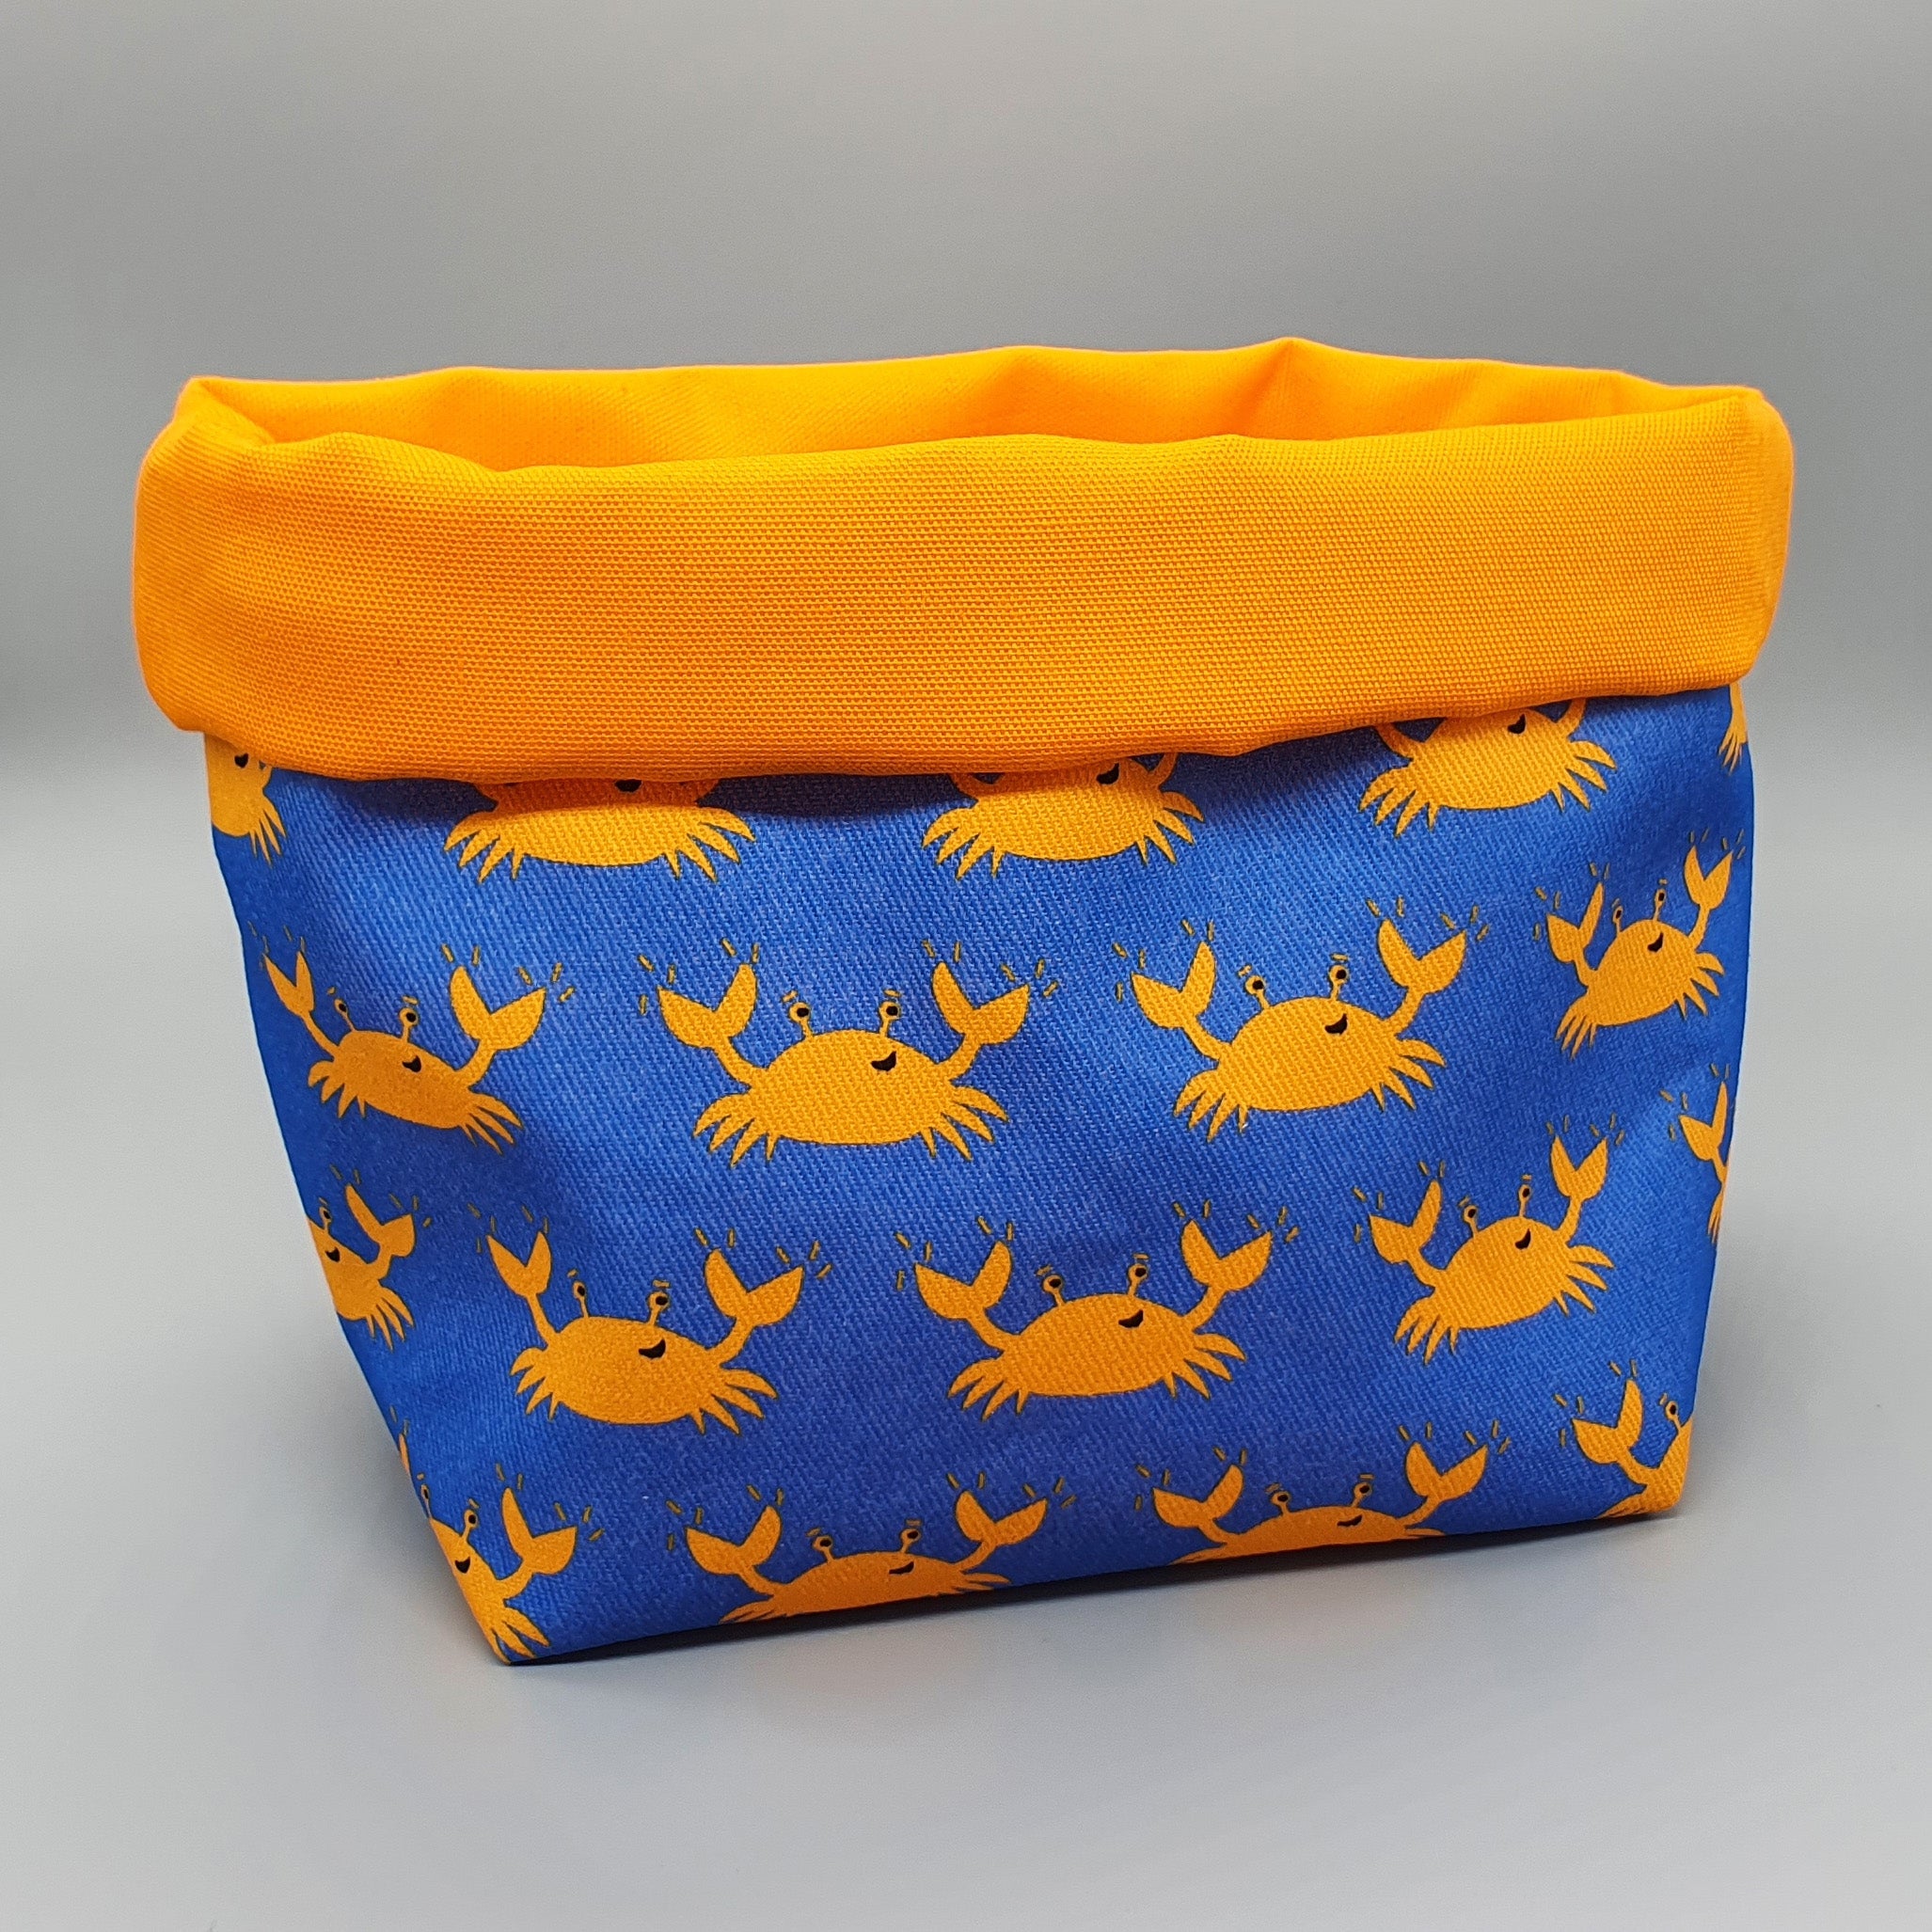 Crab fabric storage basket